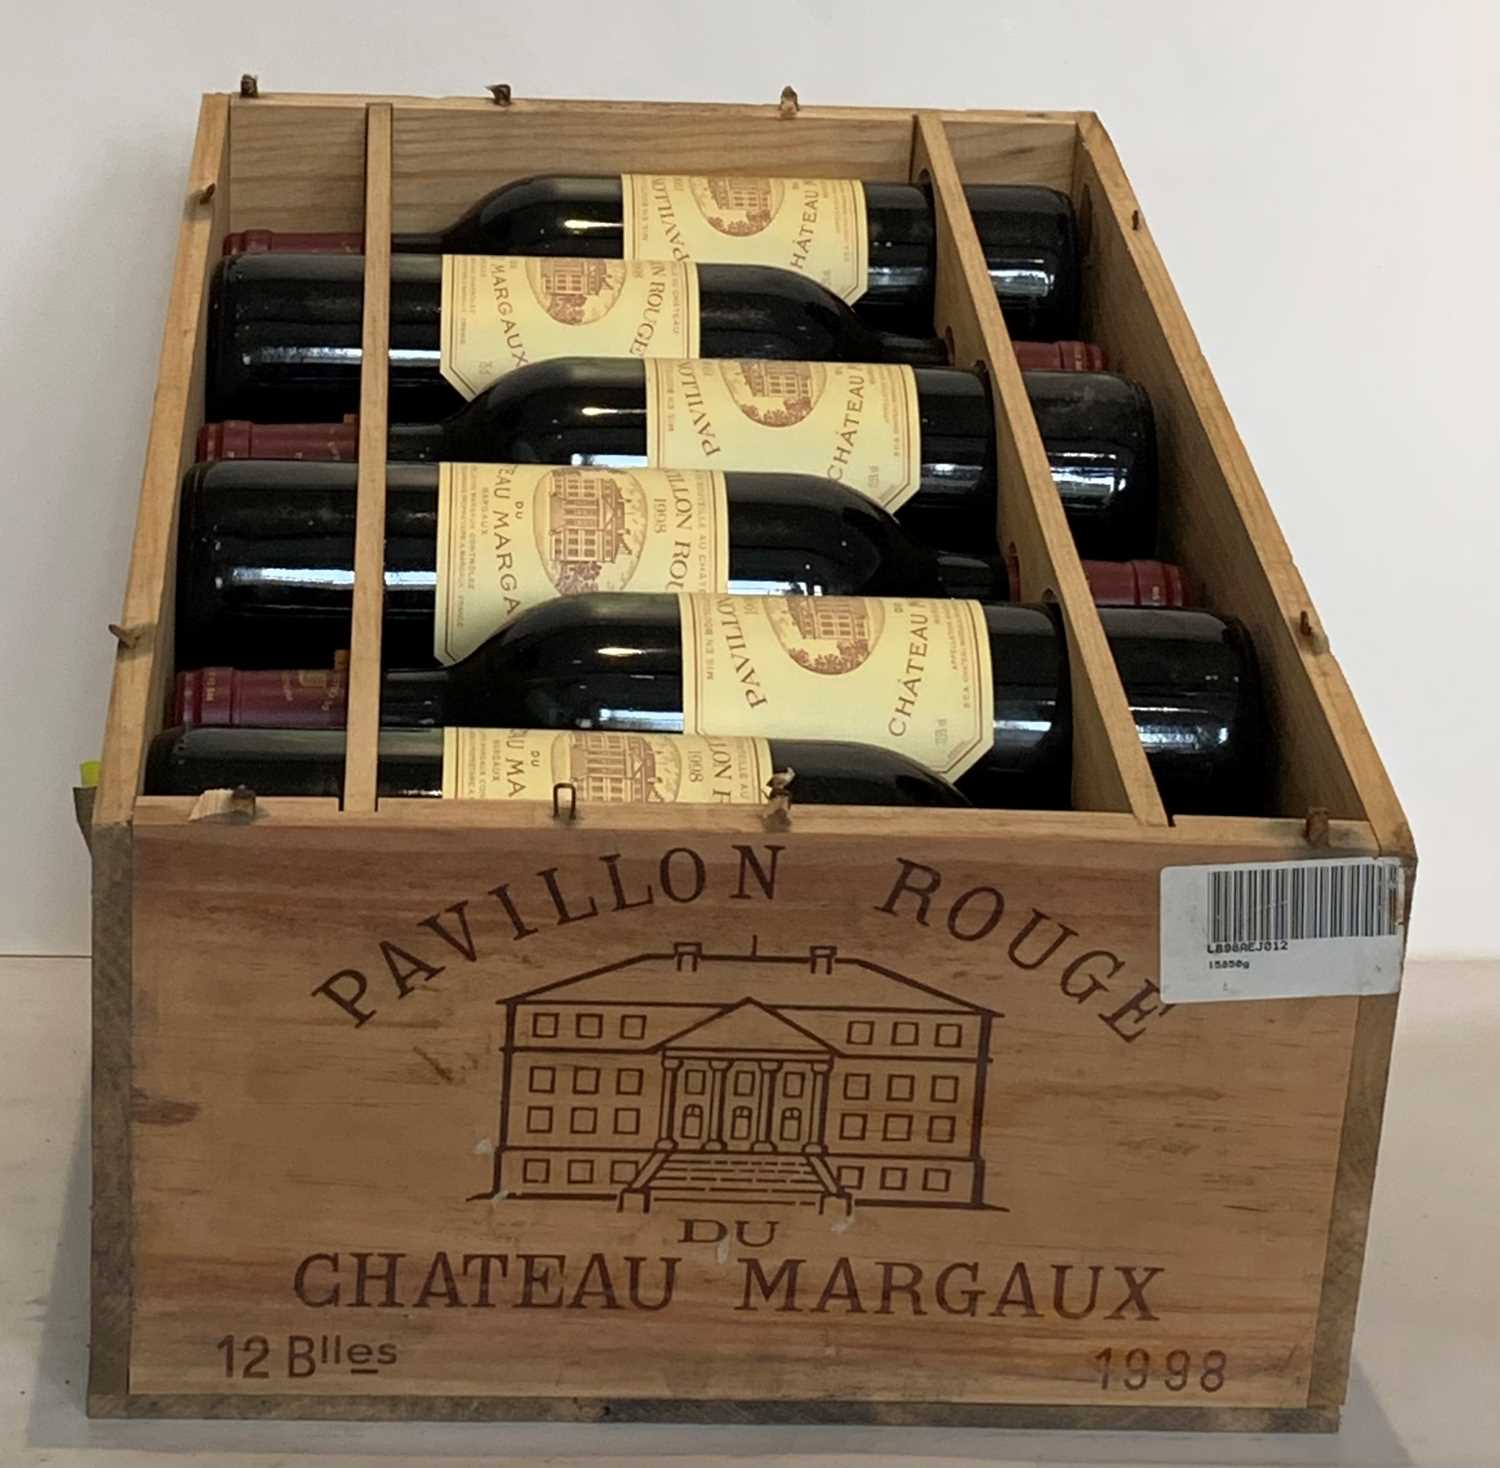 Lot 9 - 12 Bottles (IN OWC) Pavillon Rouge du Chateau Margaux 1998